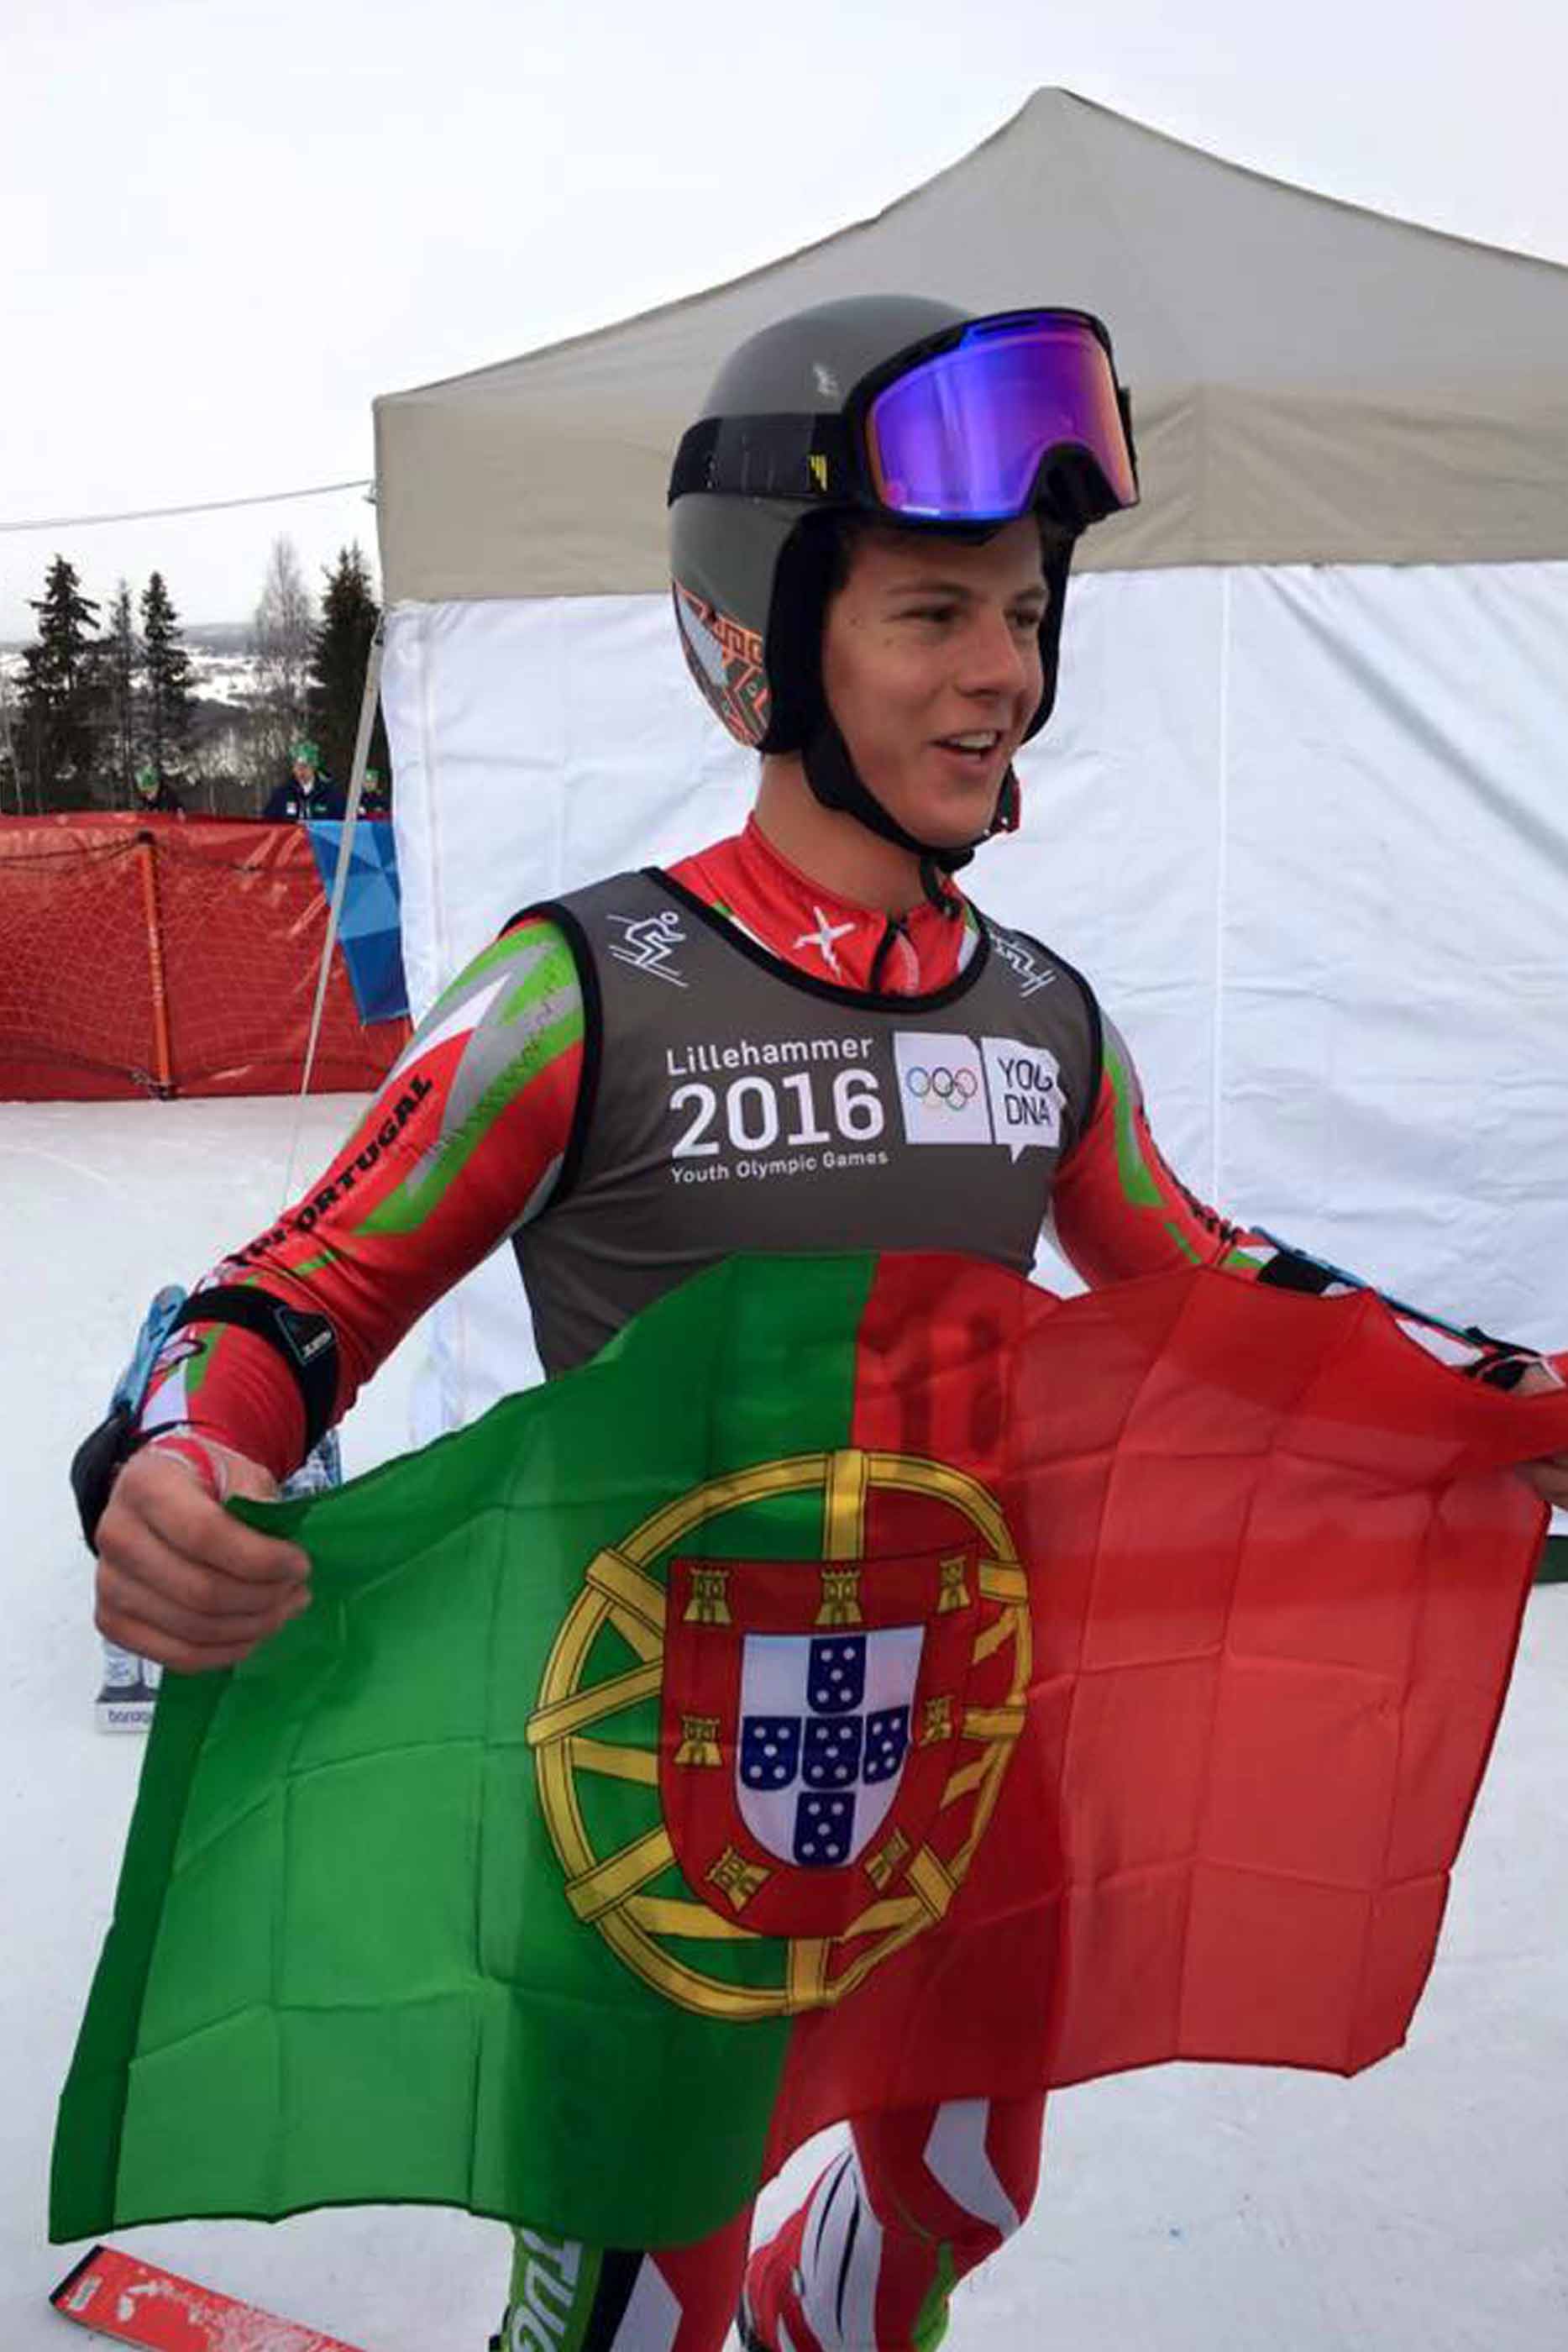 Atleta português, após a prova no Festival Olímpico da Juventude Europeia, em 2016, a segurar a bandeira de Portugal.